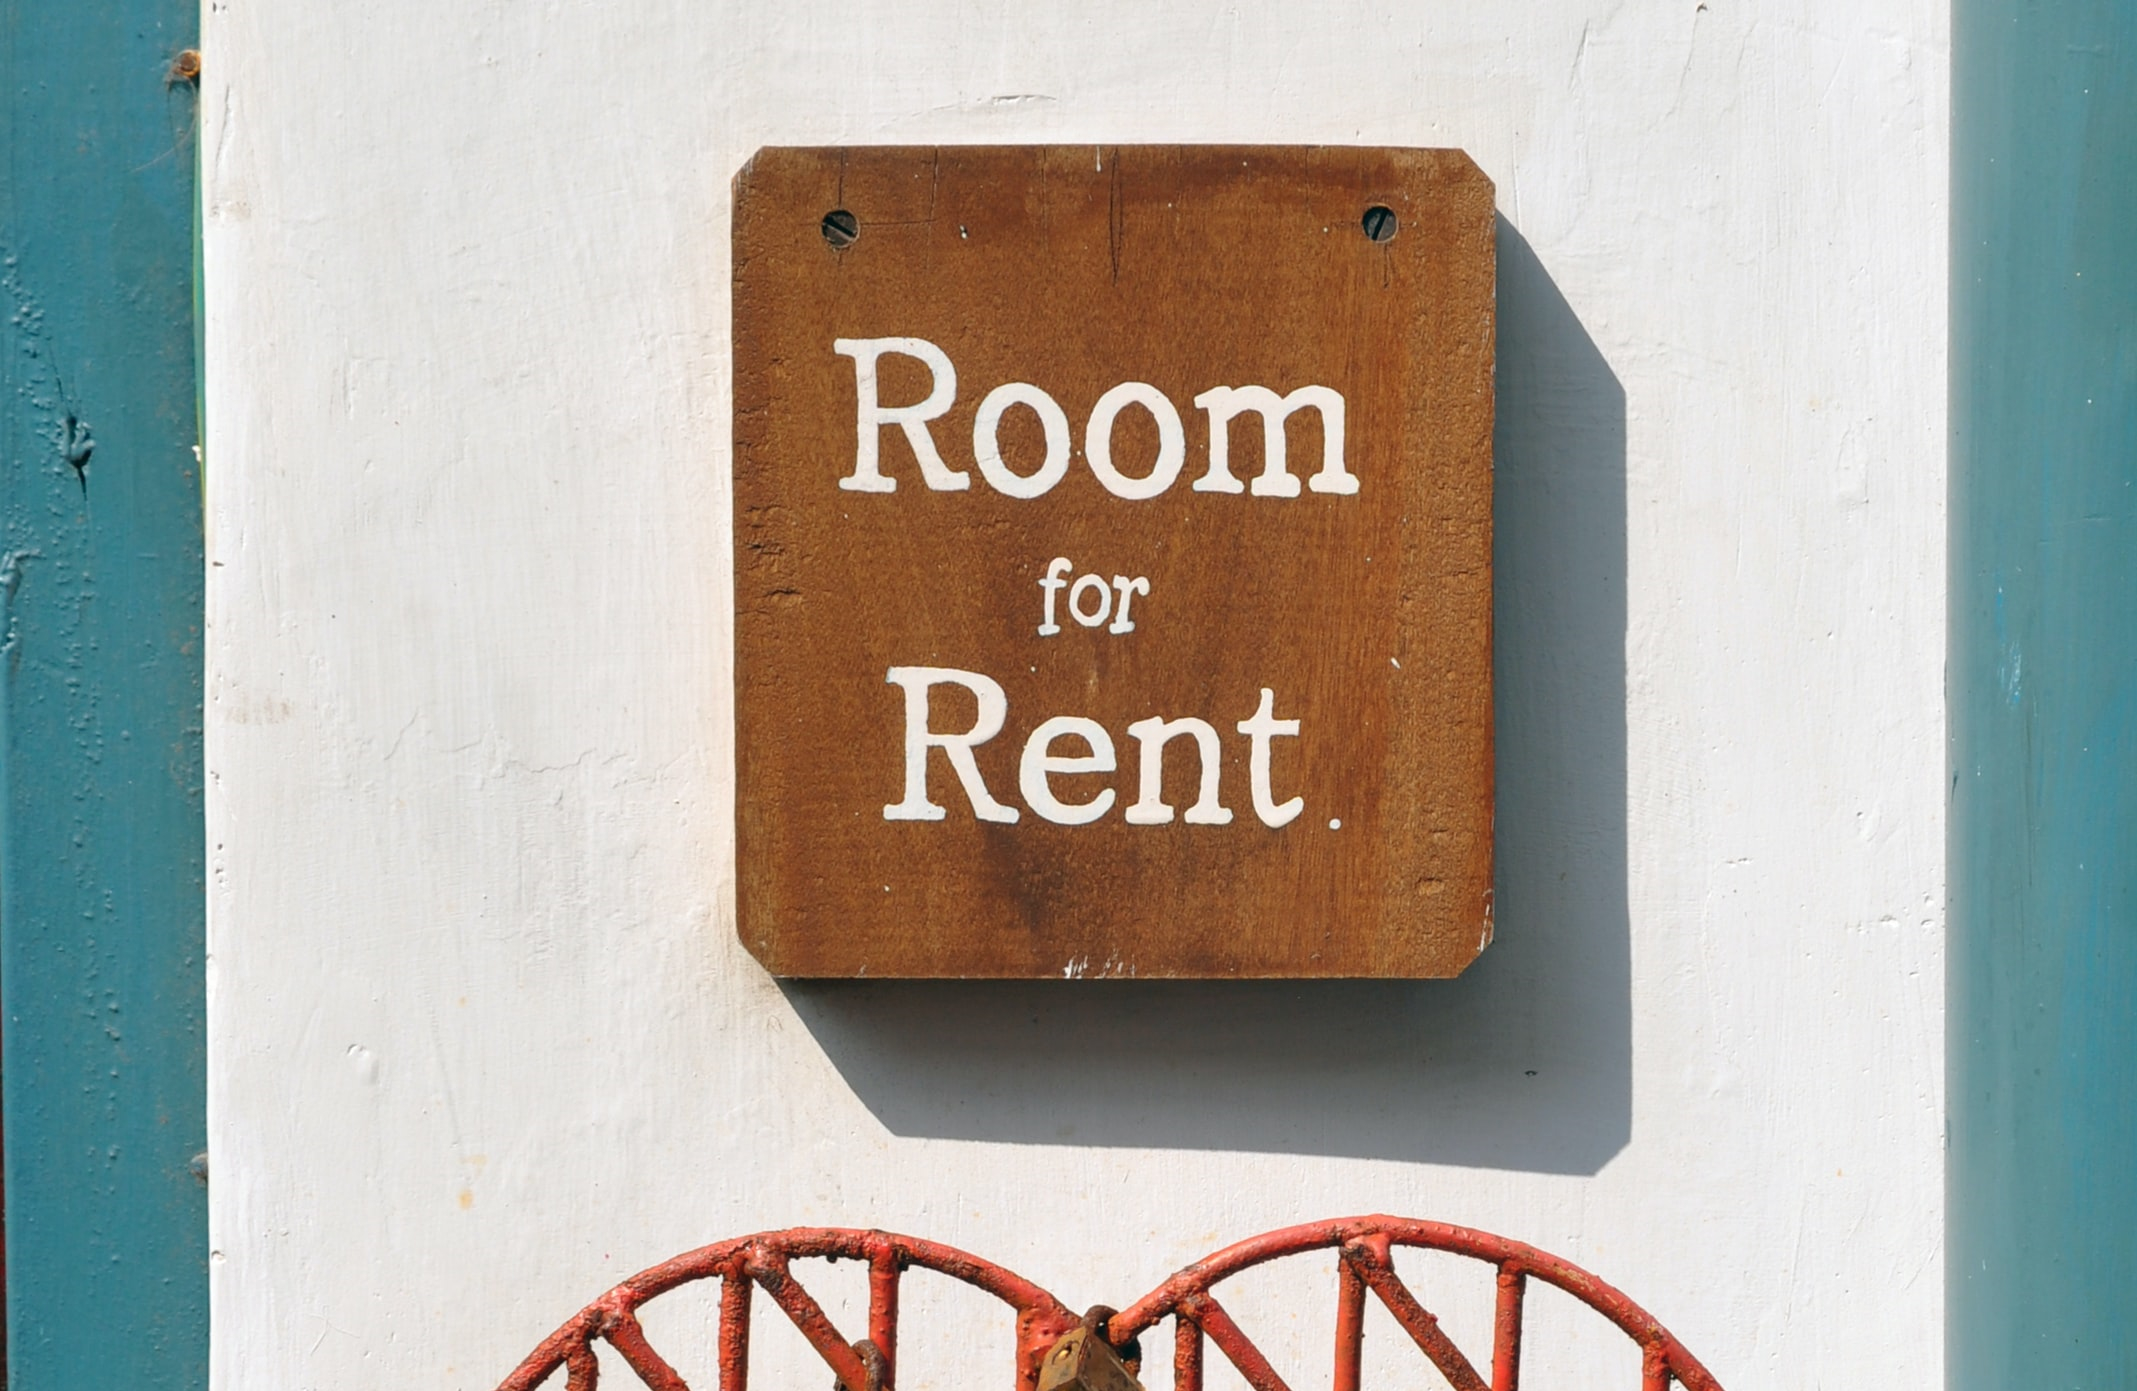 Rental Apartments & Property Management in San Jose, Santa ...